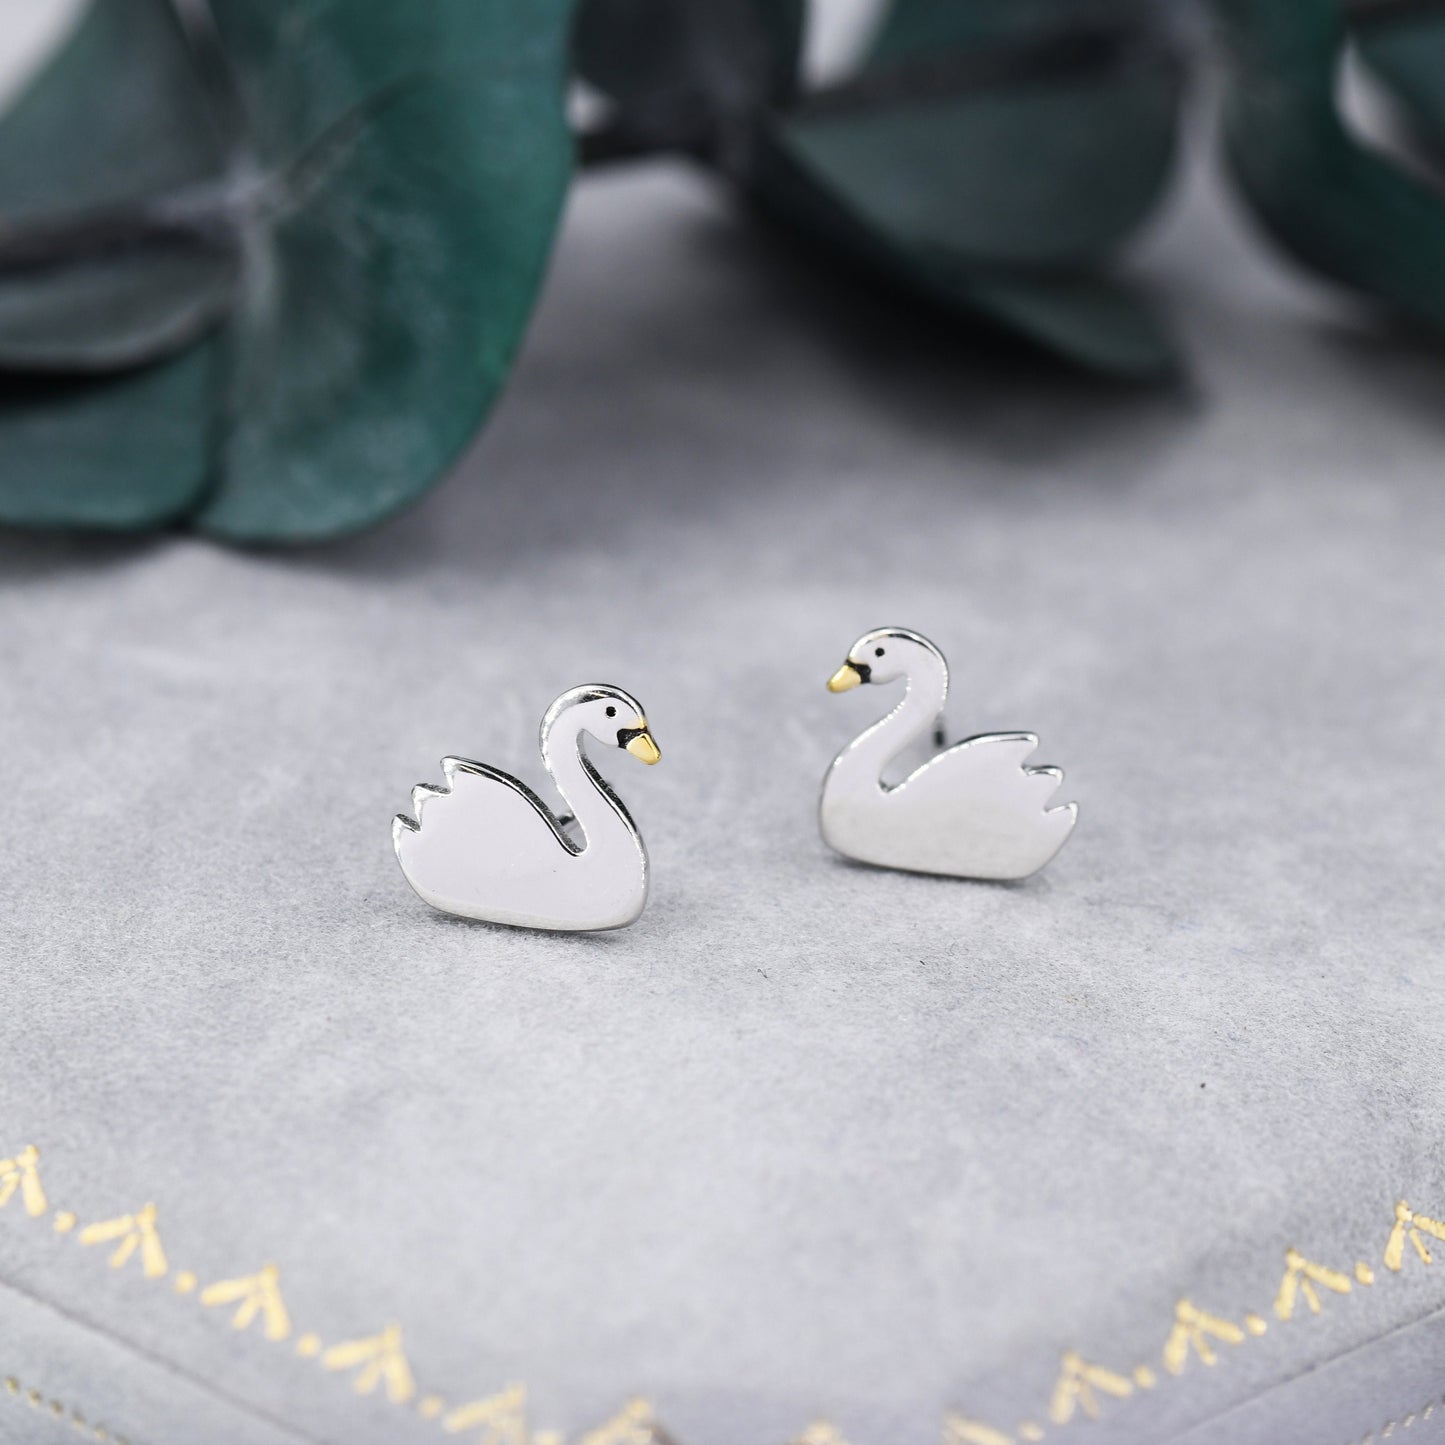 Swan Stud Earrings in Sterling Silver - Animal Stud Earrings - Bird Earrings  - Cute,  Fun, Whimsical